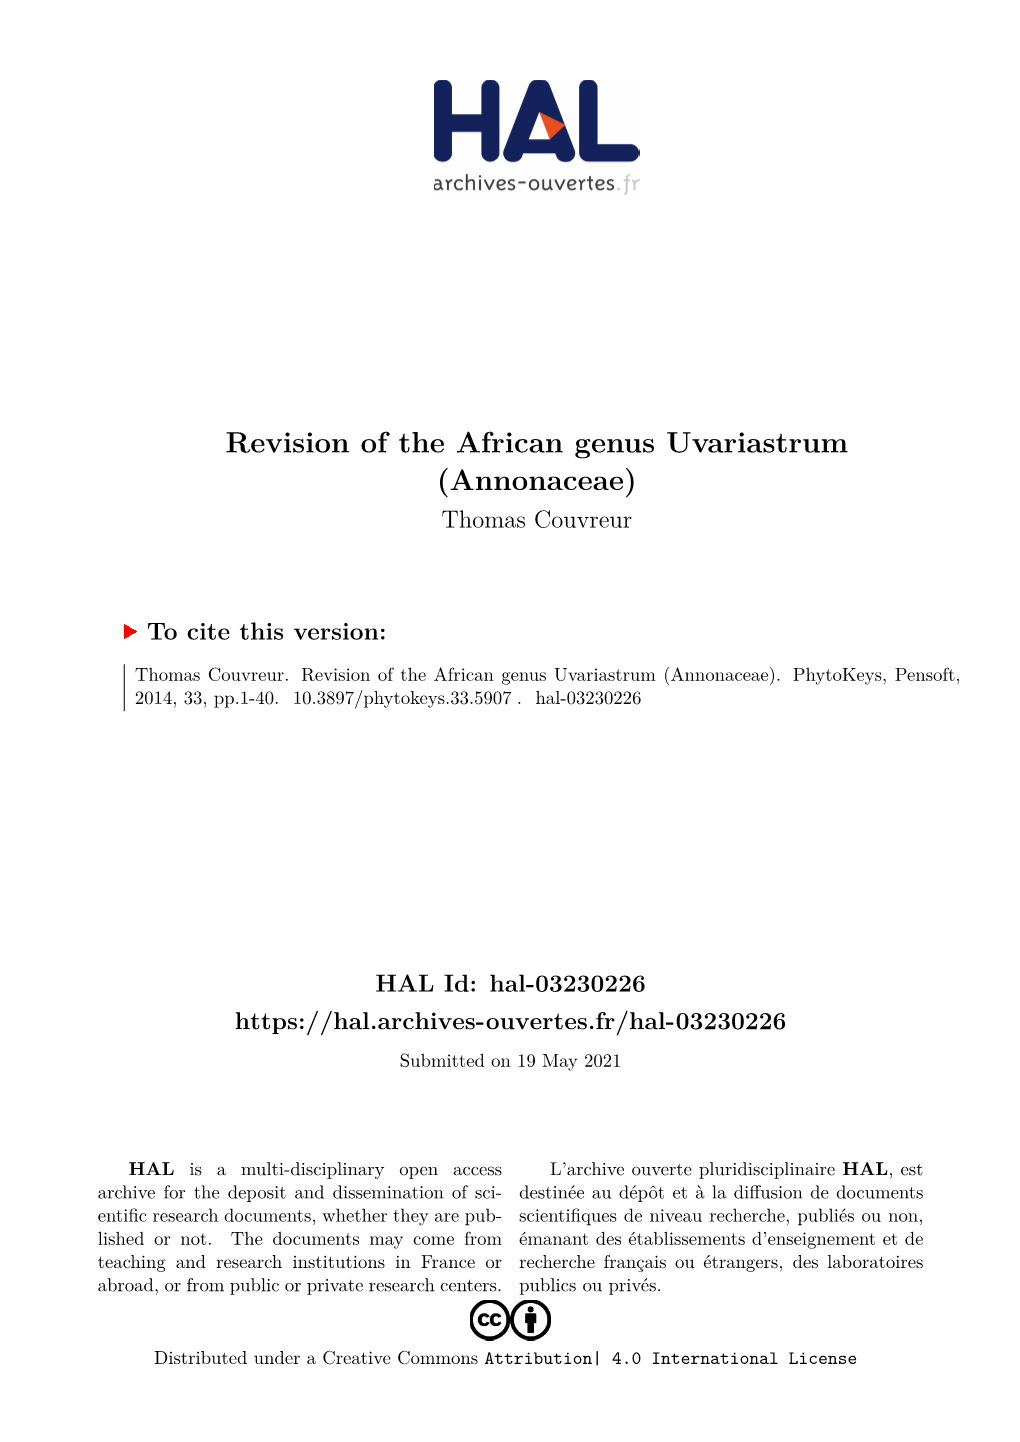 Revision of the African Genus Uvariastrum (Annonaceae) Thomas Couvreur